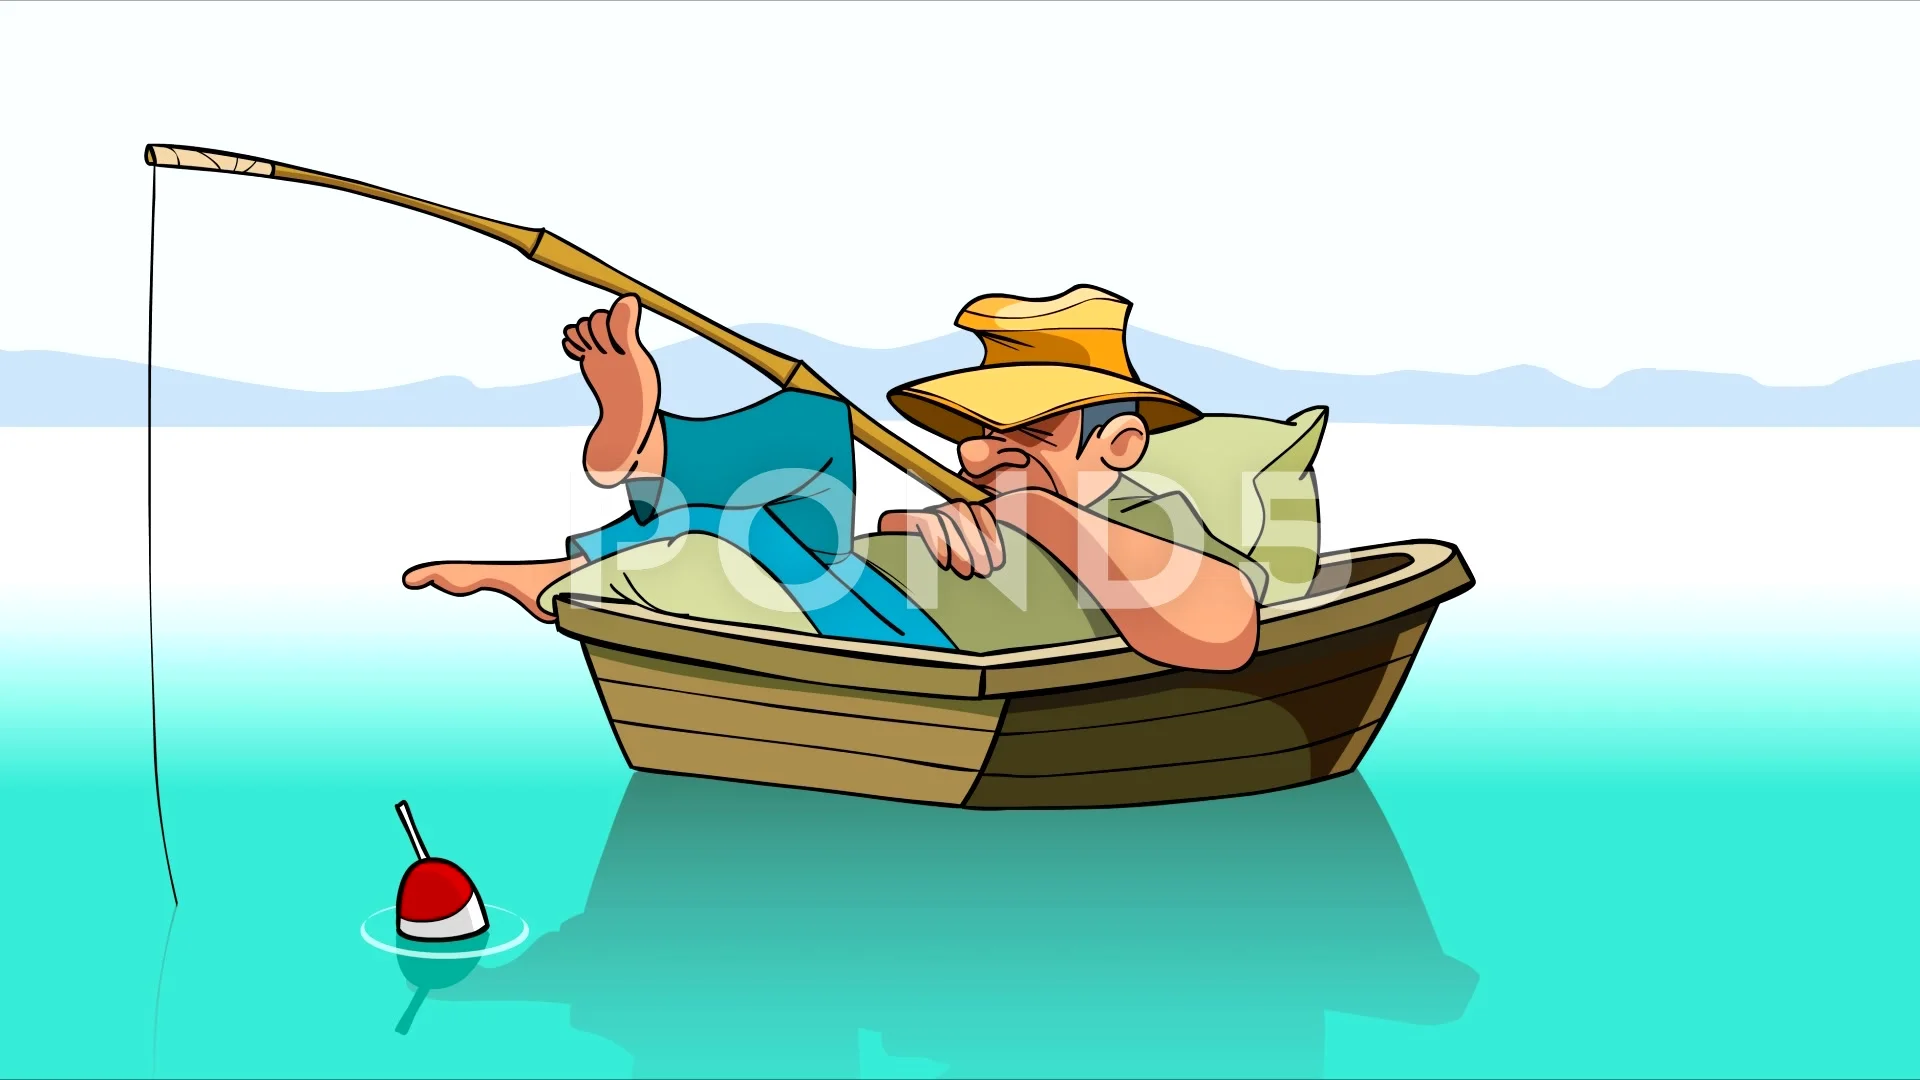 https://images.pond5.com/cartoon-fisherman-fishing-rod-boat-066583351_prevstill.jpeg